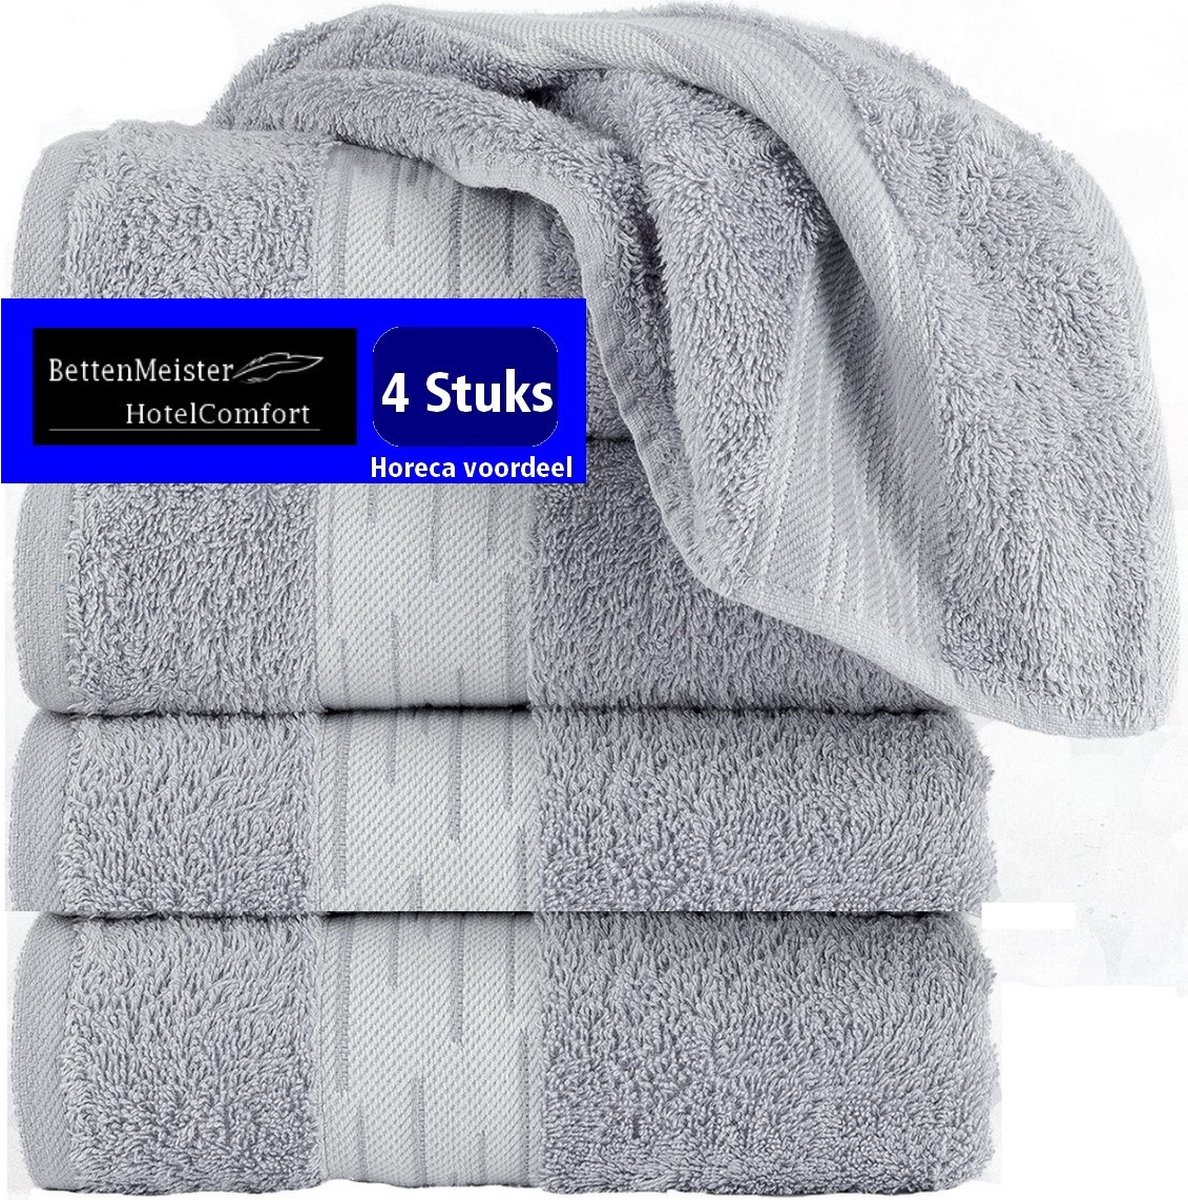 4 Pack Handdoeken - (4 stuks) Essentials 550g. M² 50x100cm grijs - Katoen badstof